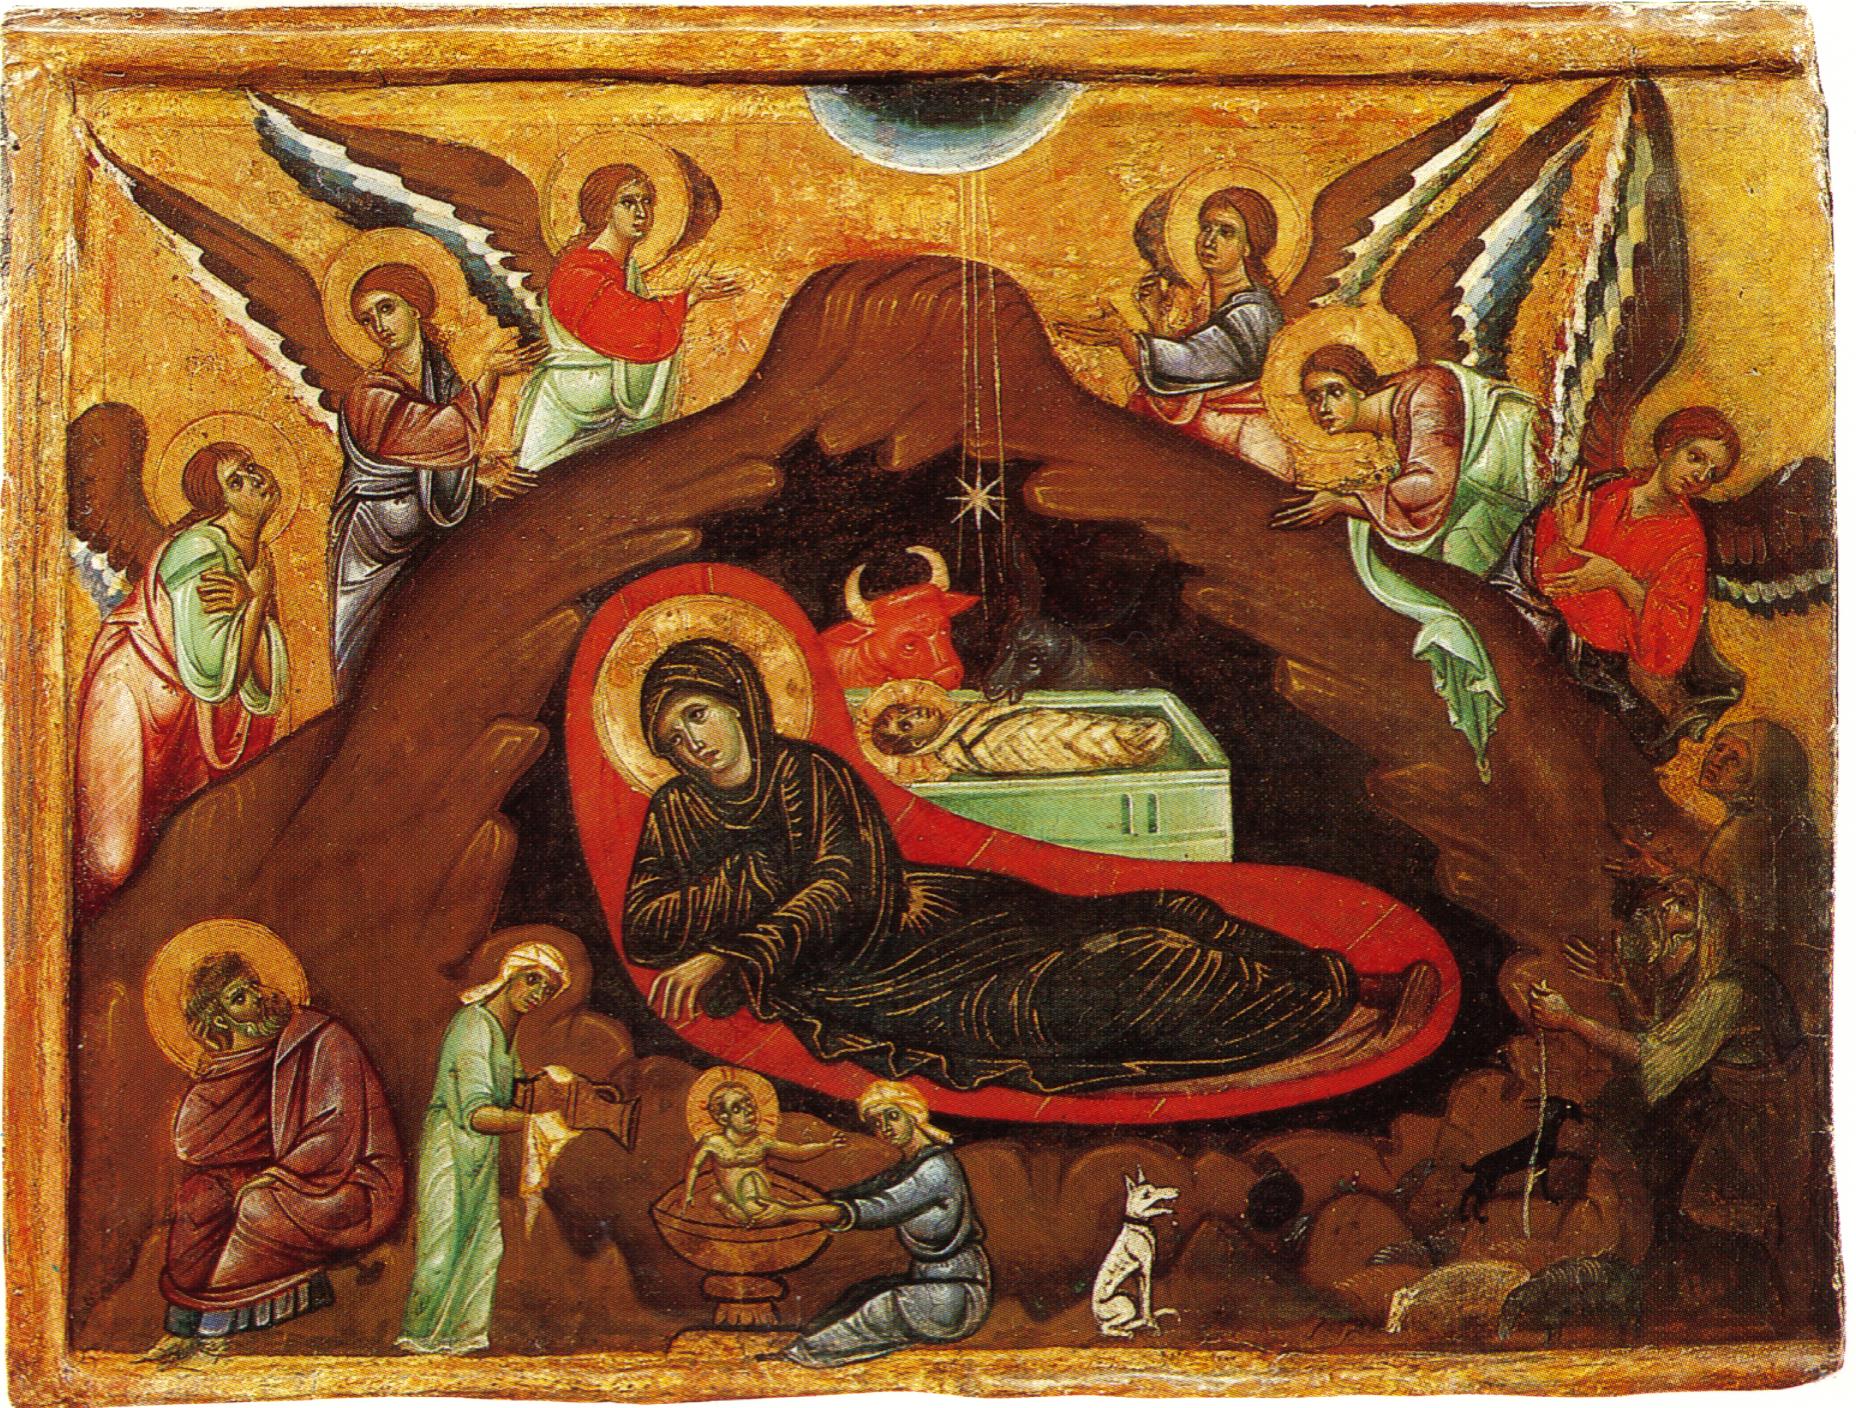 La representación de Natividad en la pintura